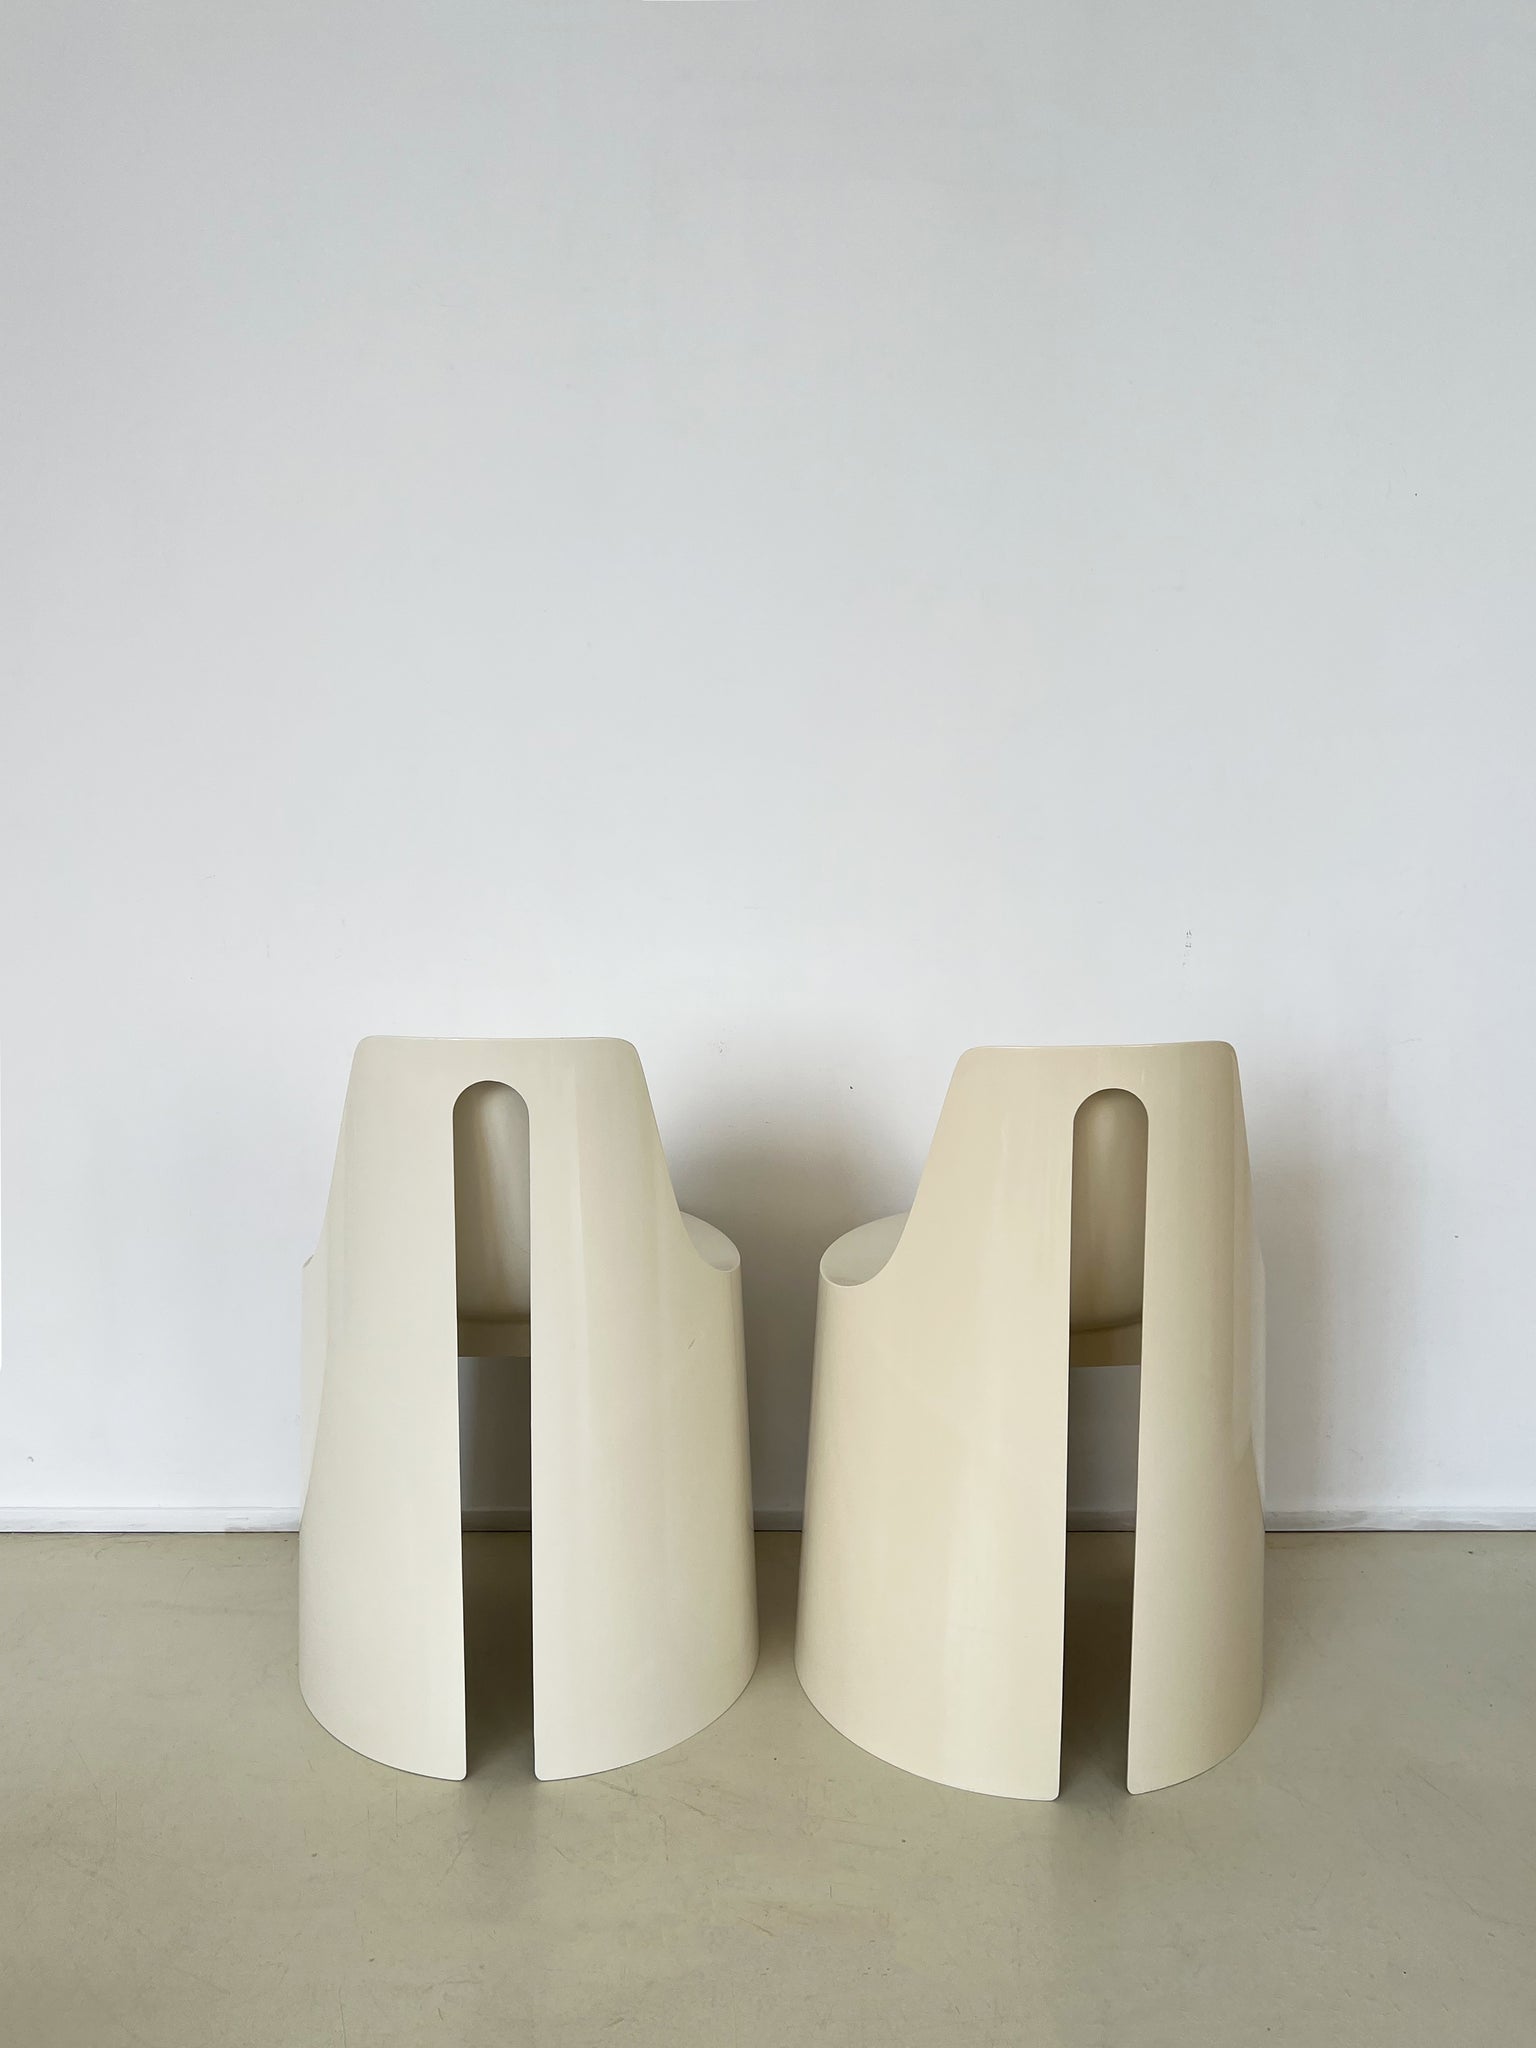 1970s Cream Umbo Stacking Chairs